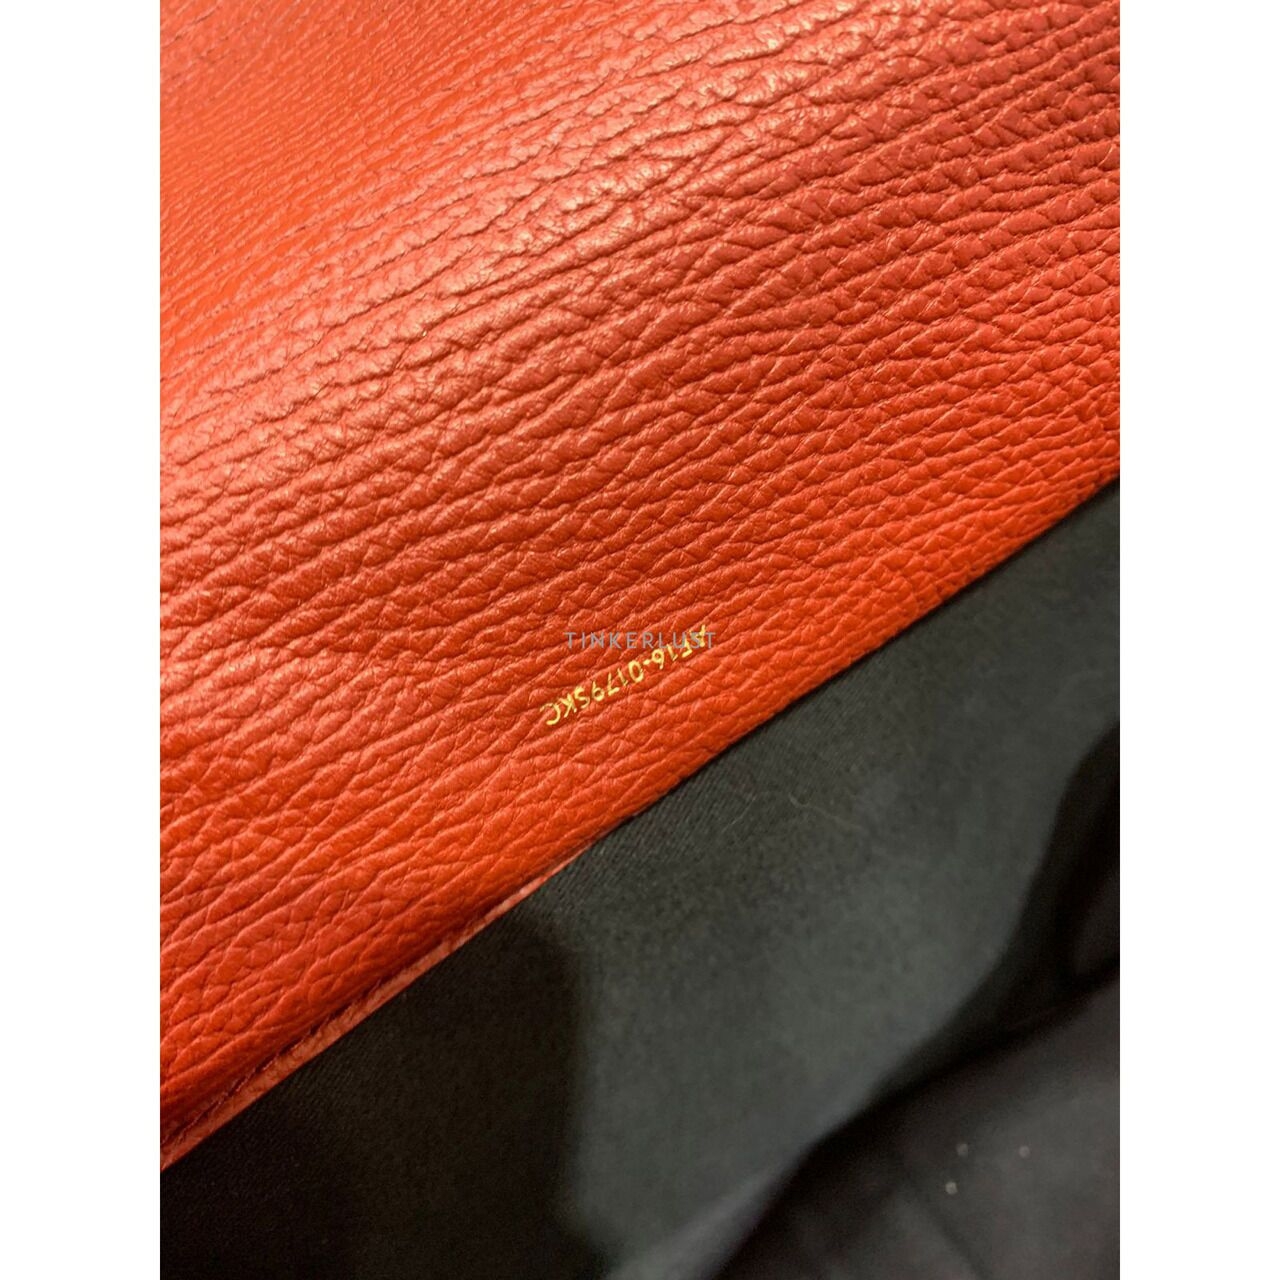 3.1 Phillip Lim Pashli Medium Leather Red 2019 Satchel